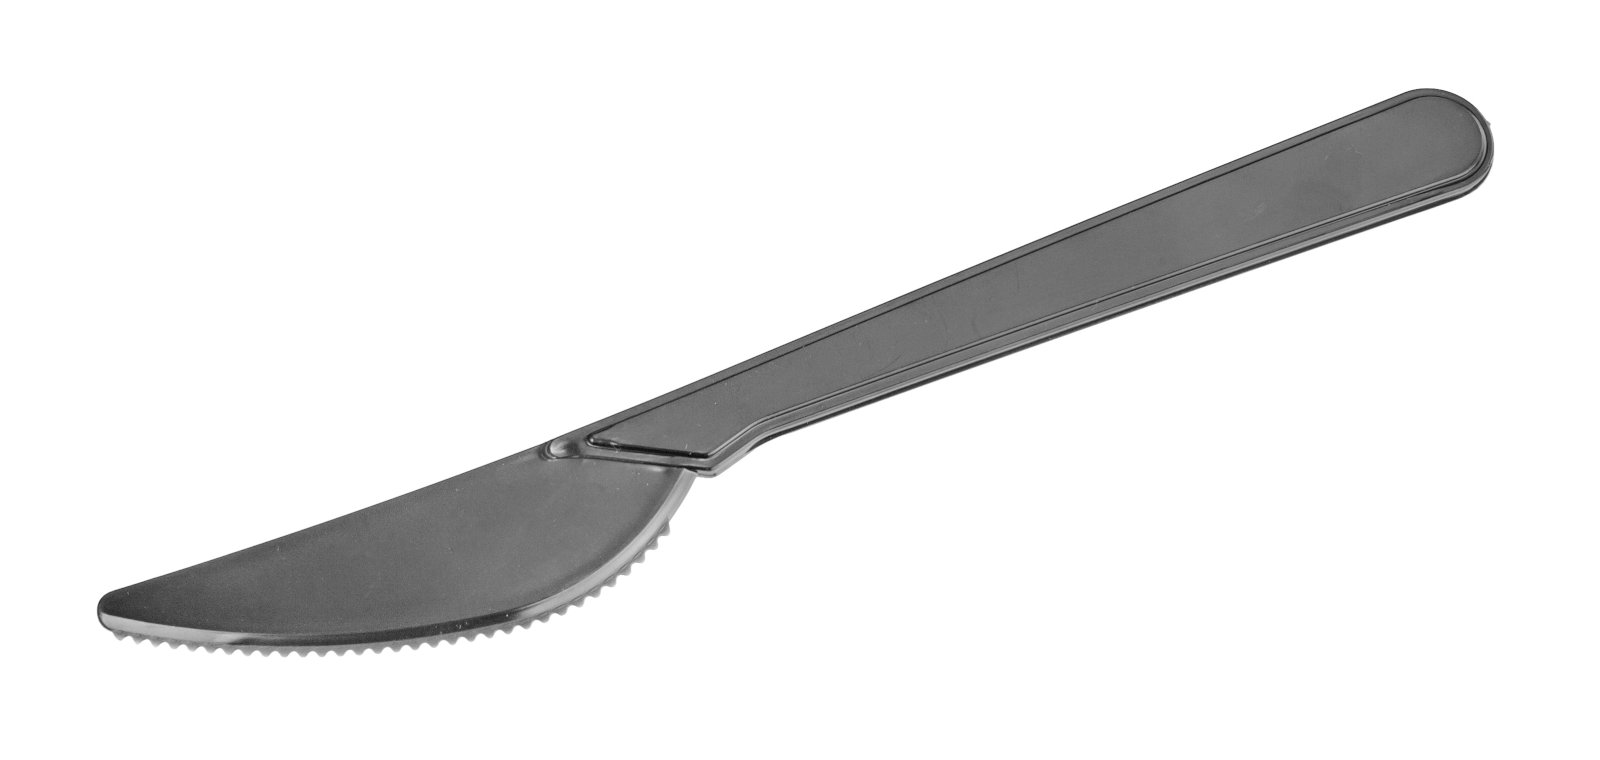 Нож столовый Компакт одноразовый, выполнен из черного полистирола. Подходит для употребления как горячих, так и холодных продуктов. Длина 180 мм. В упаковке - 50 штук, в коробке - 2000 штук.